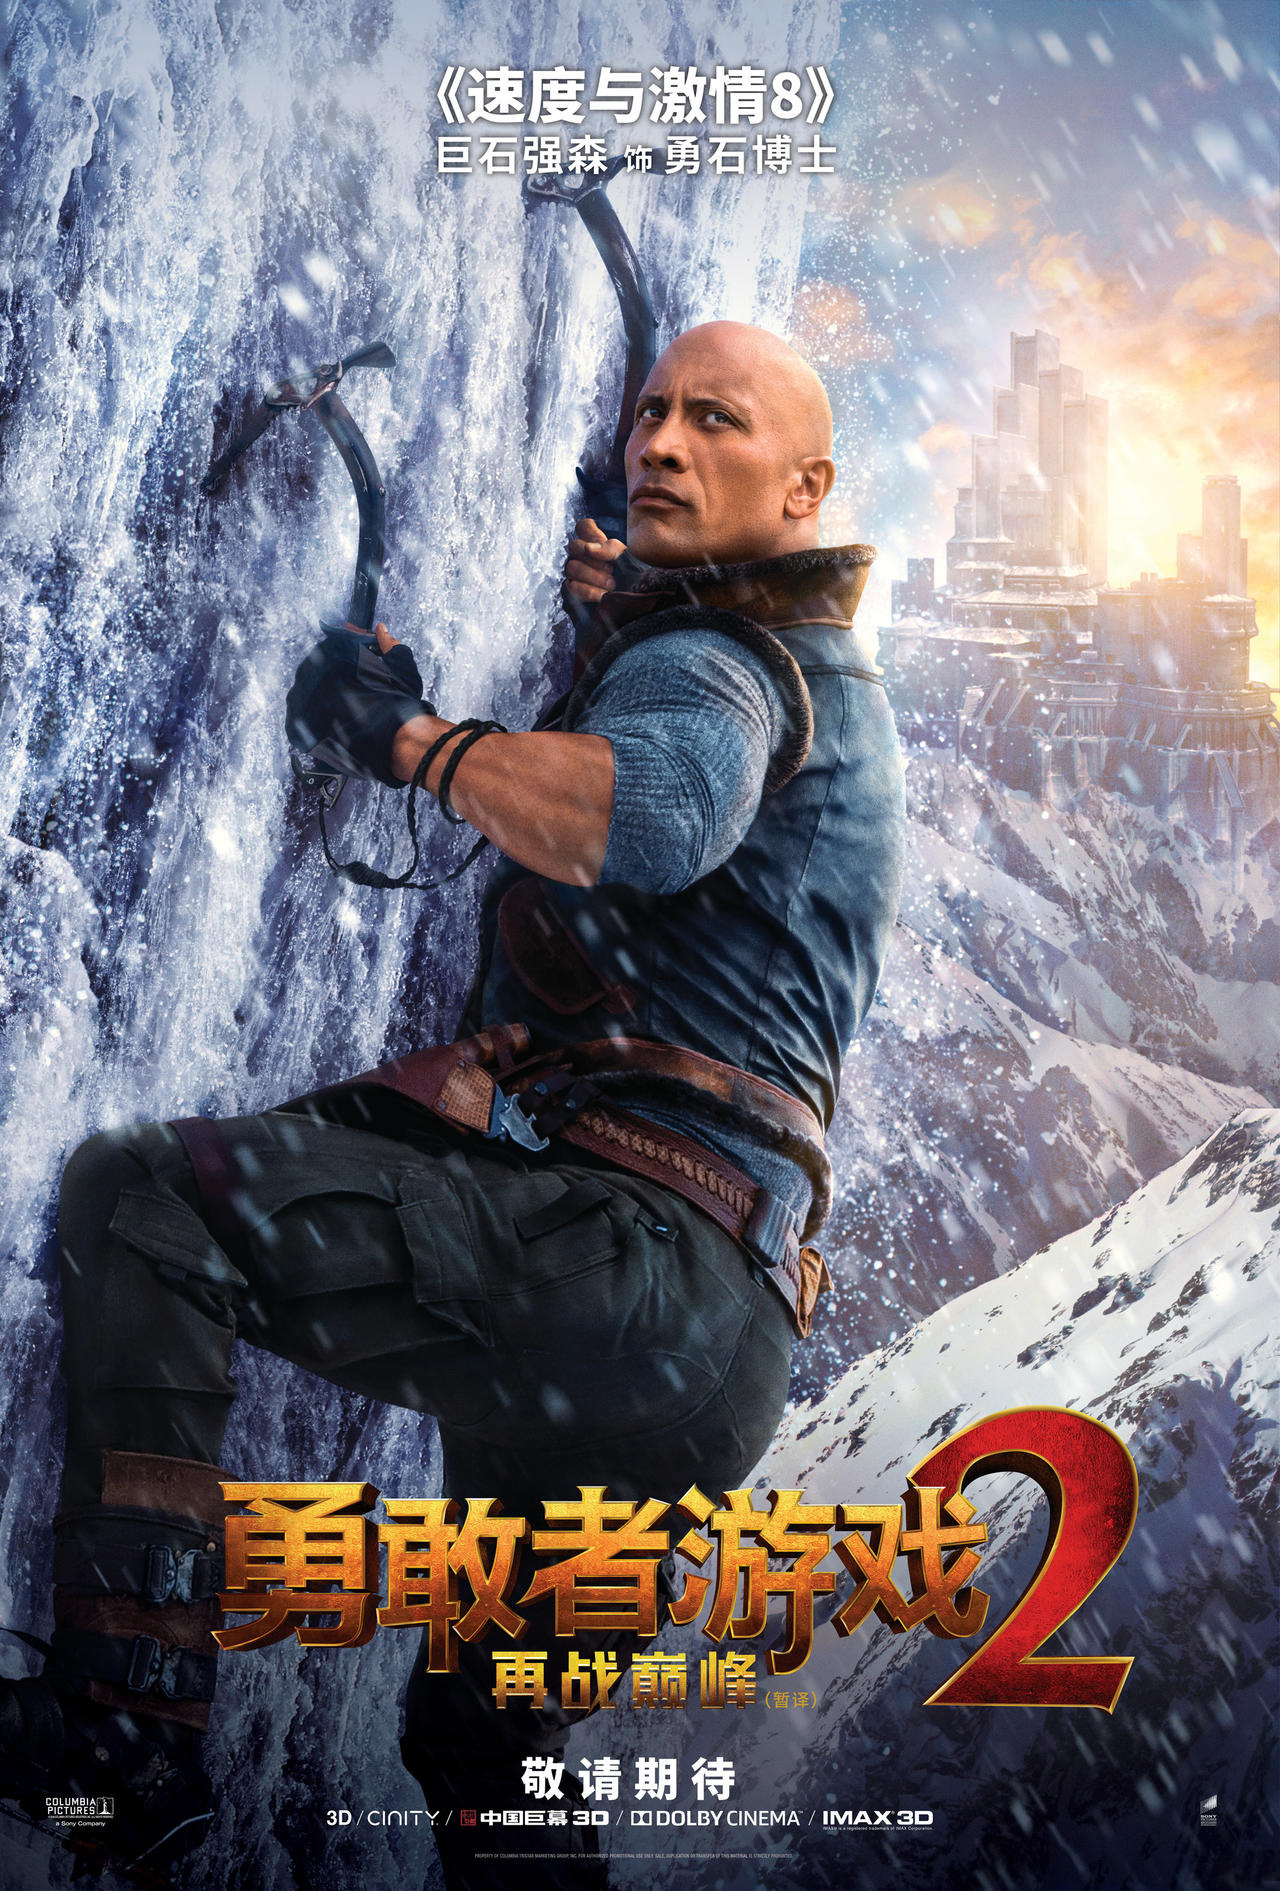 《勇敢者游戏2》中文版角色海报曝光 神秘人物露真容